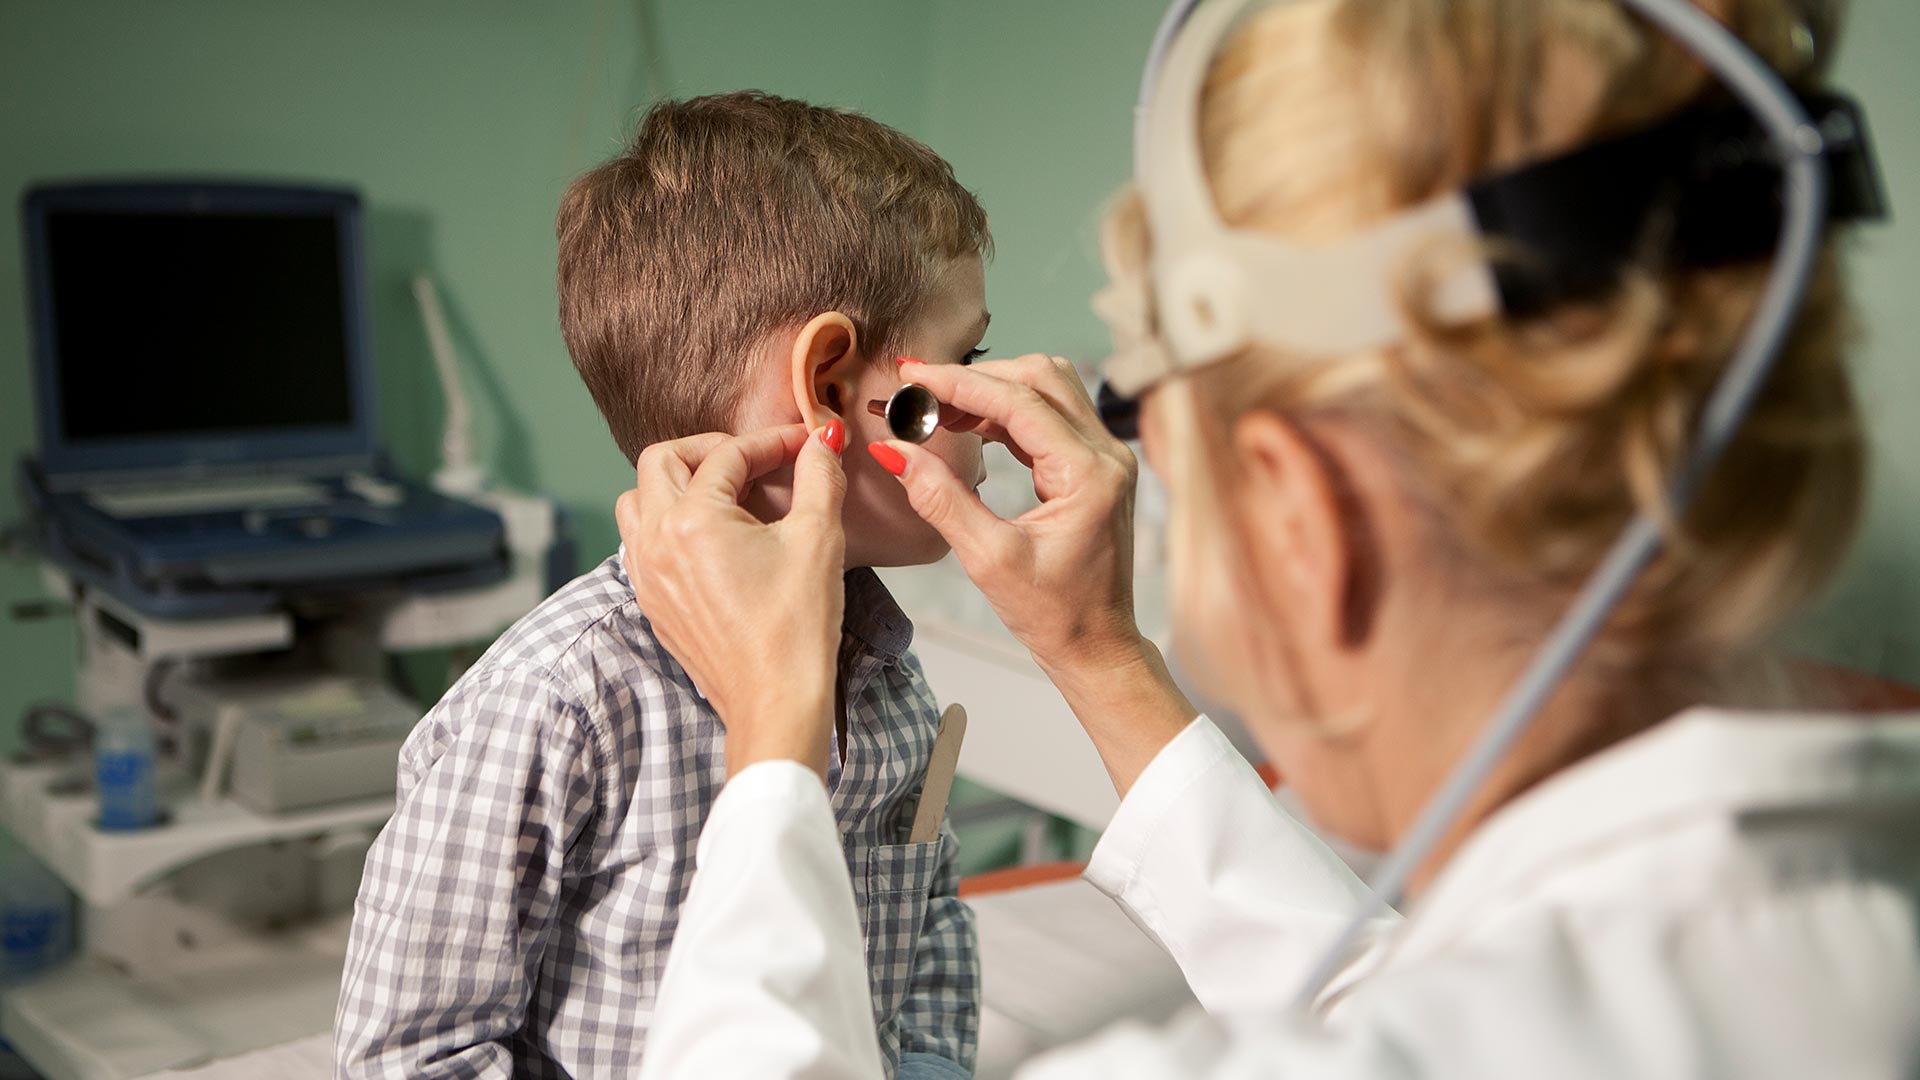 El tratamiento del tapón de cera debe hacerse en consultorio bajo supervisión médica (Getty Images)